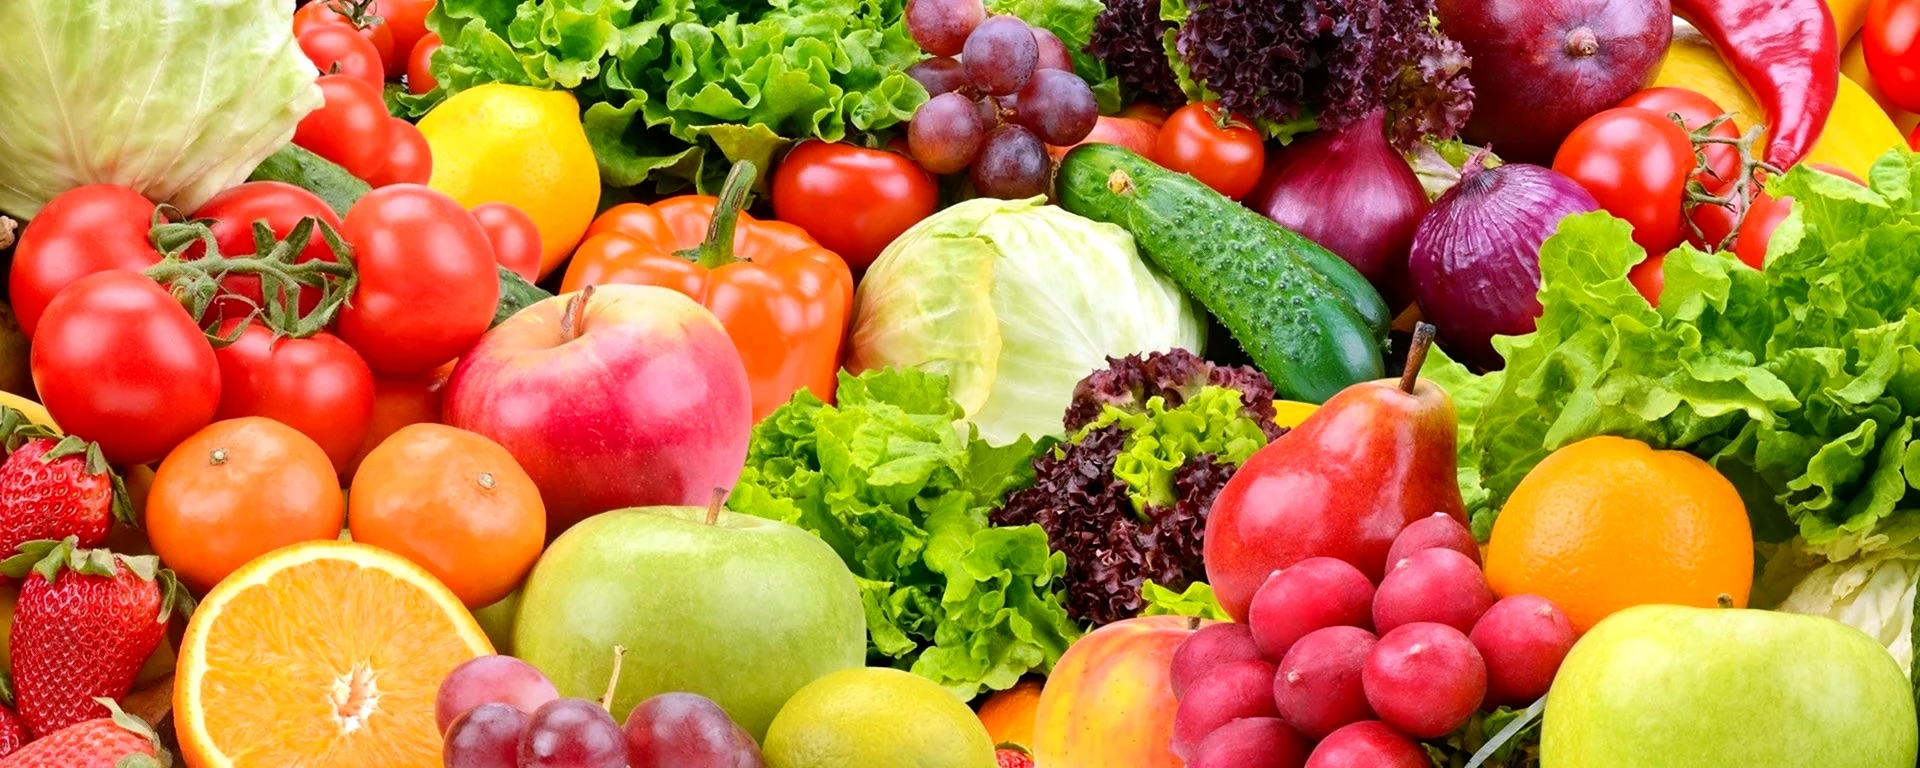 Фотообои овощи и фрукты